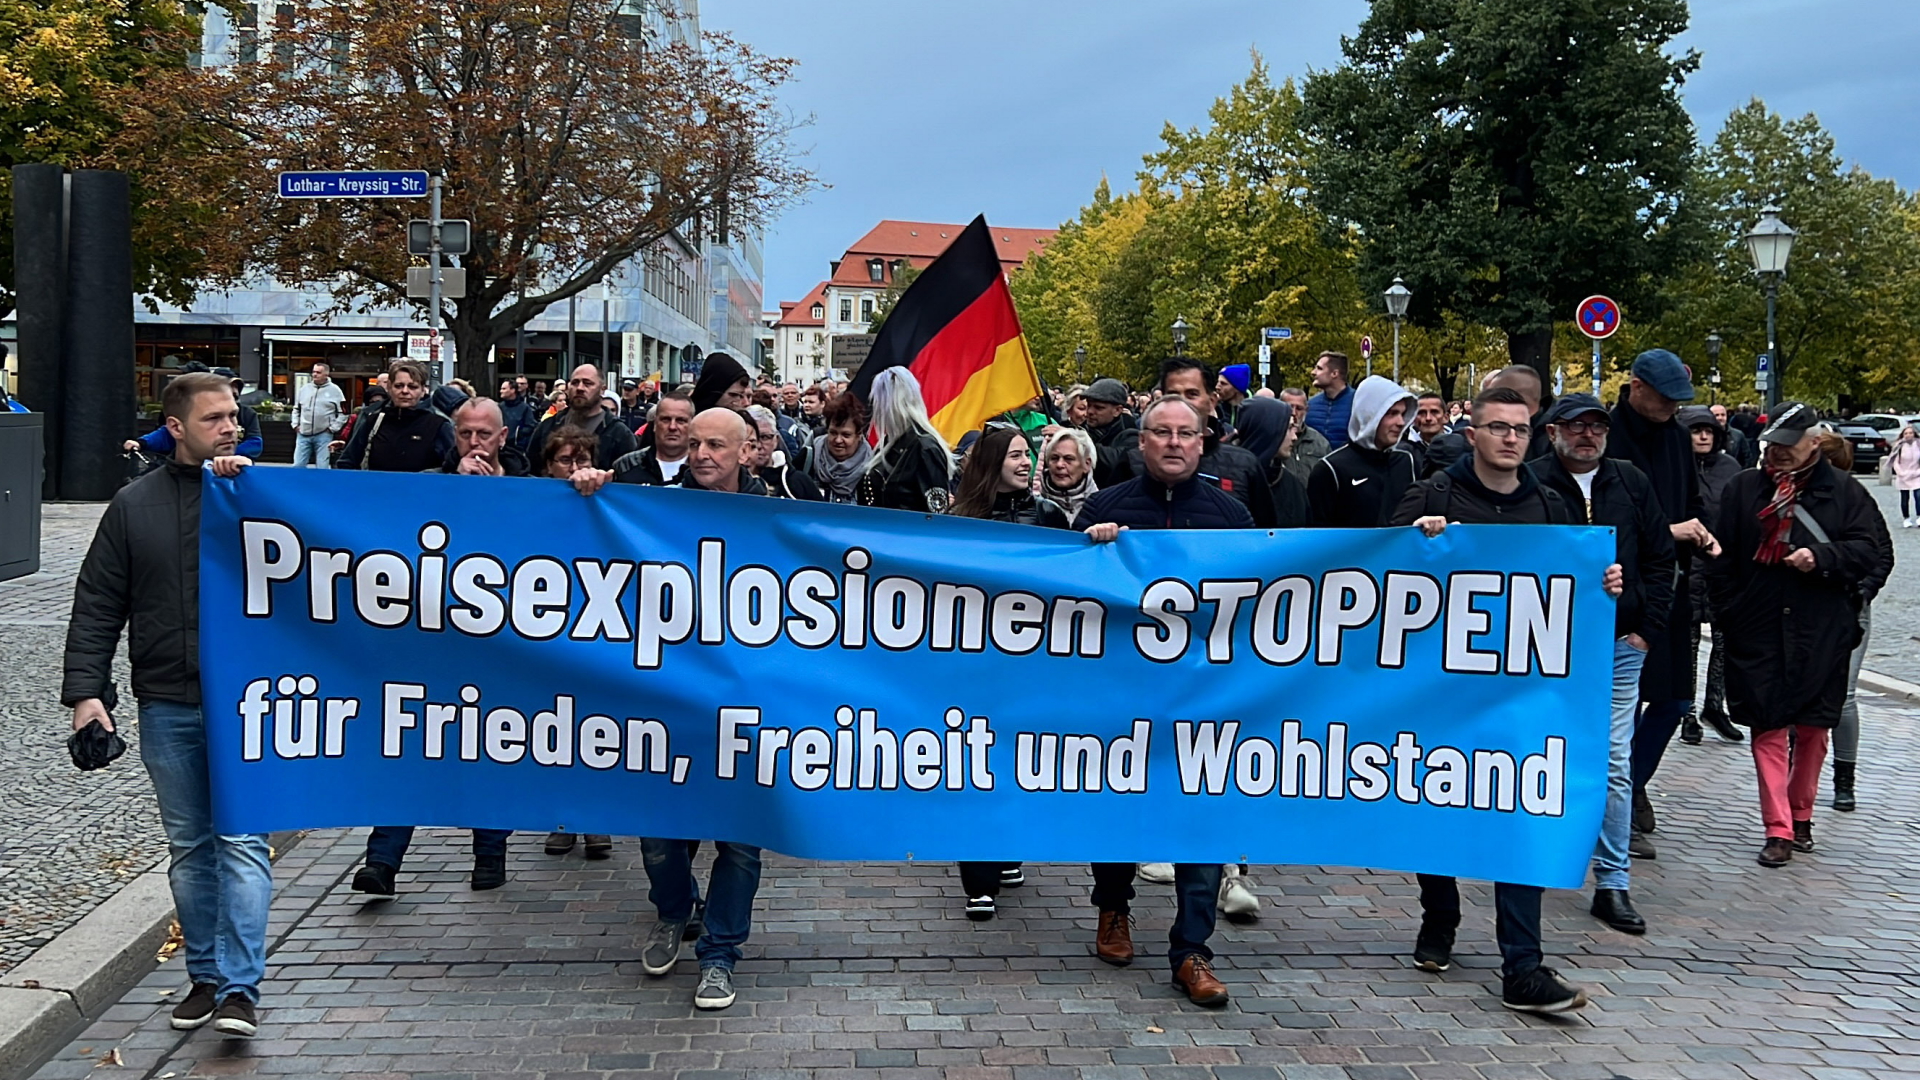 Teilnehmer einer Demonstration gegen die Energie- und Russlandpolitik laufen mit einem Banner mit der Aufschrift "Preisexplosion stoppen" durch Magdeburg.